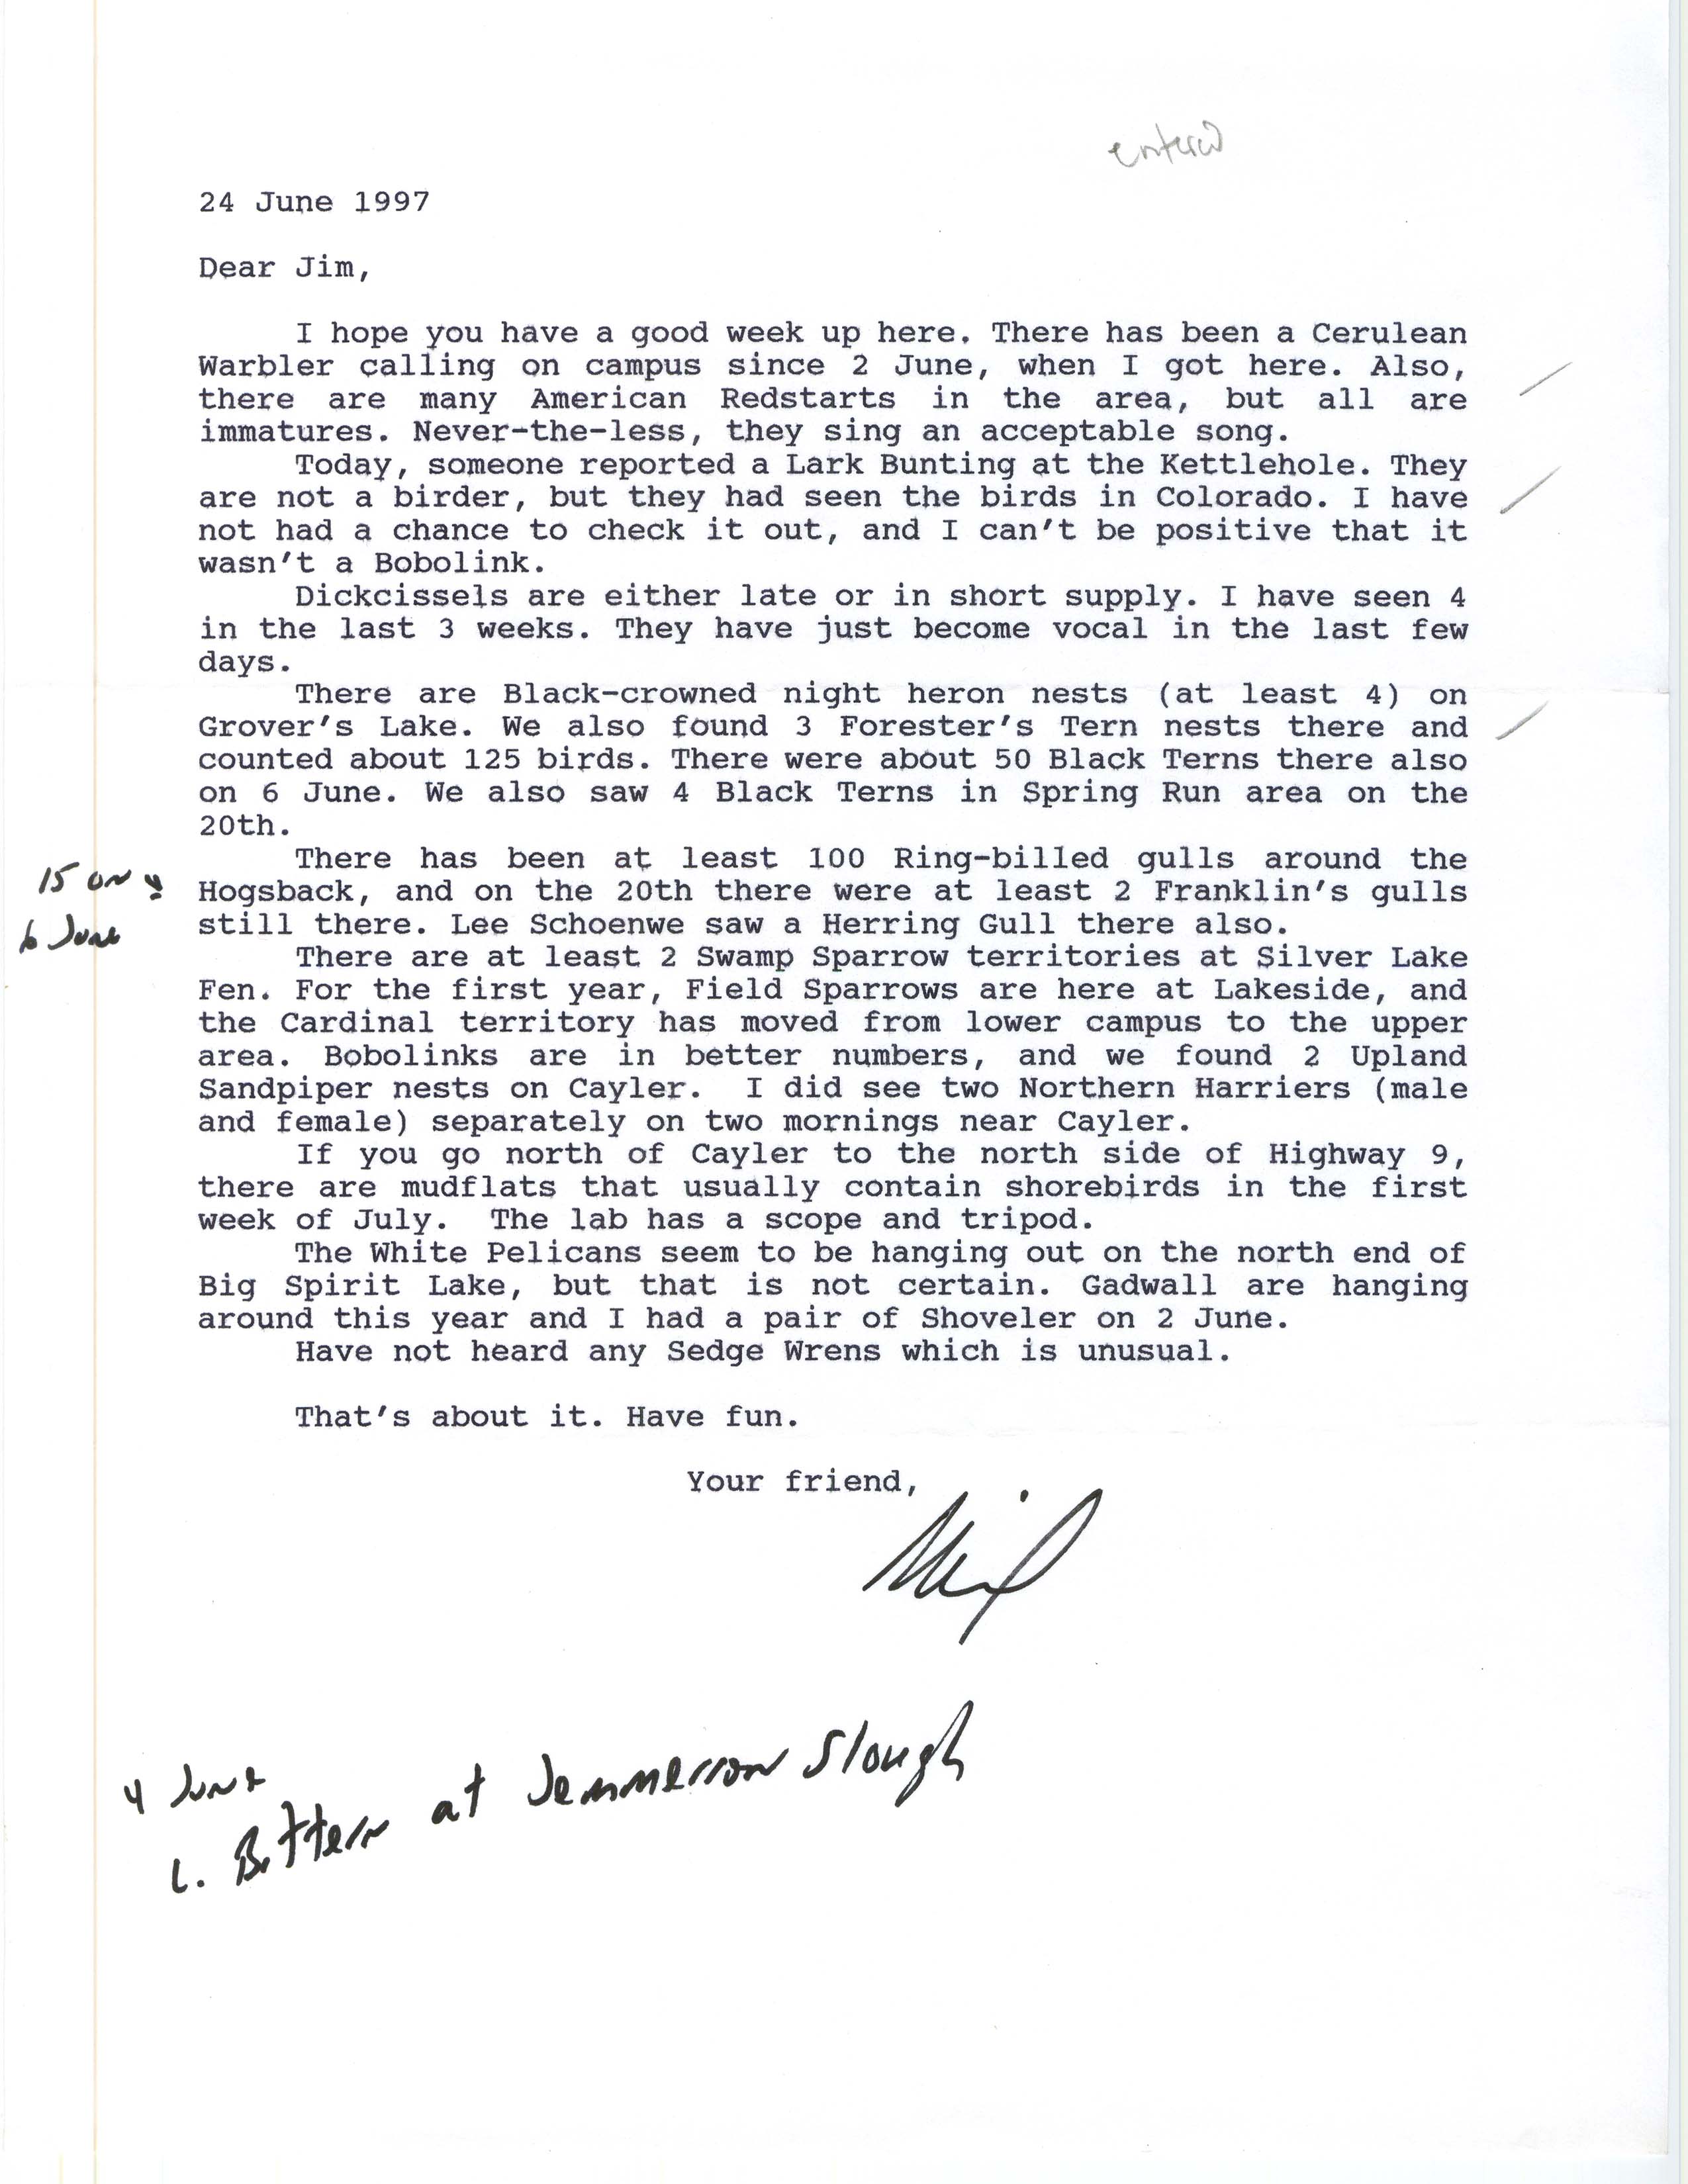 Neil Bernstein letter to James J. Dinsmore regarding summer bird sightings in northwest Iowa, June 24, 1997